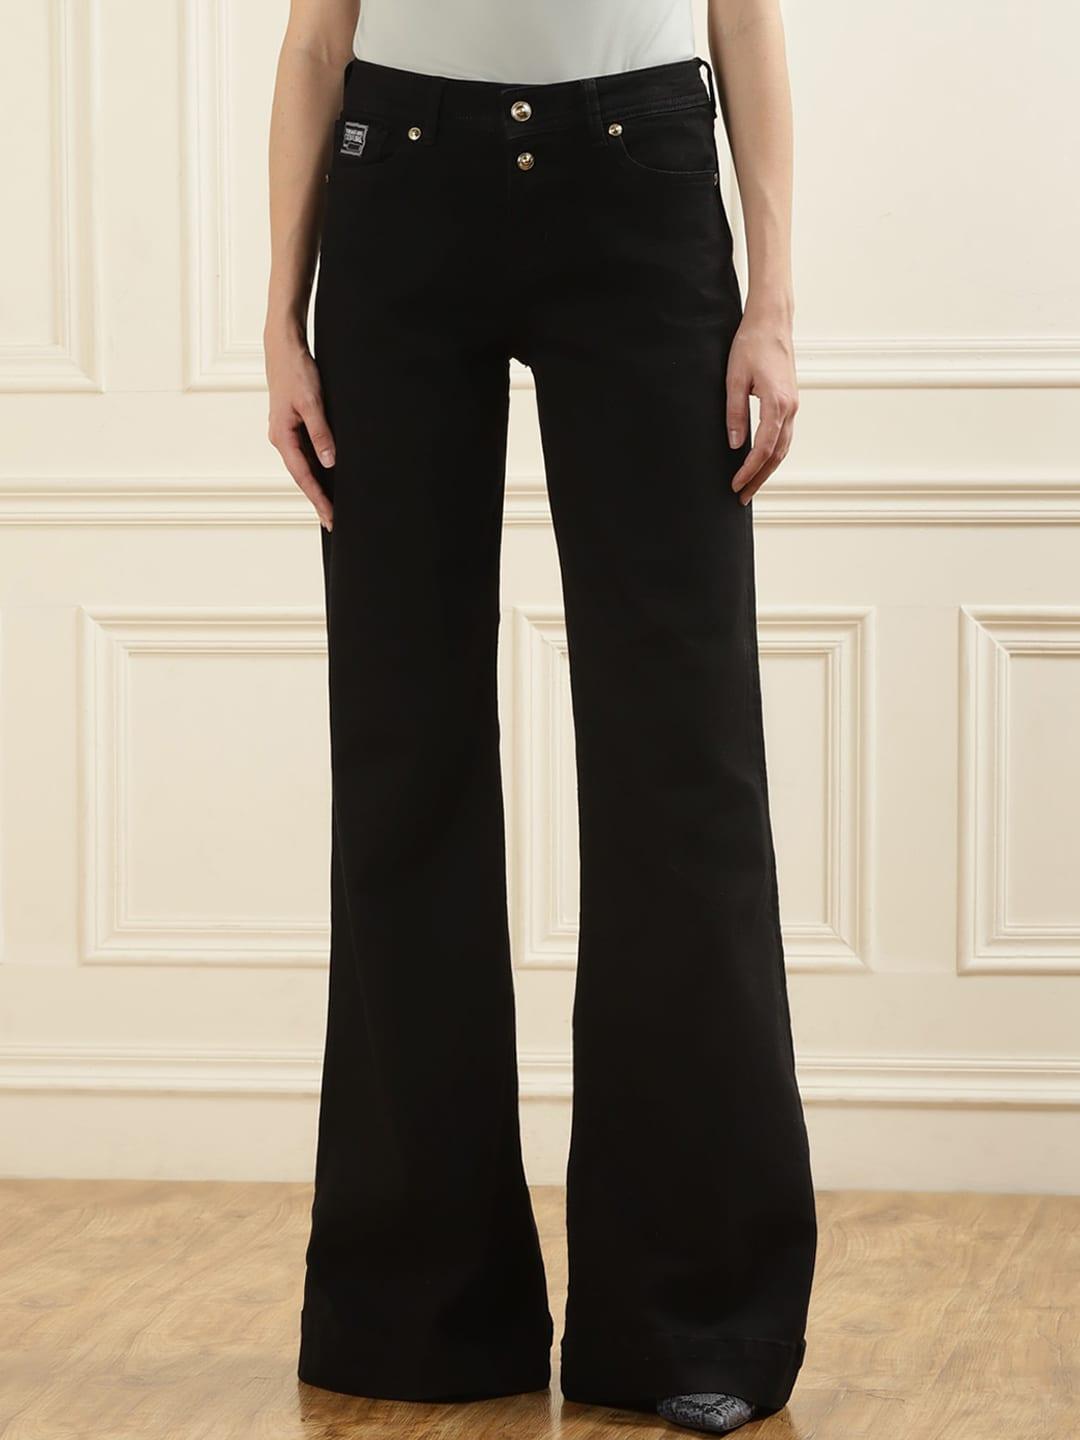 versace jeans couture women black slim fit low distress jeans